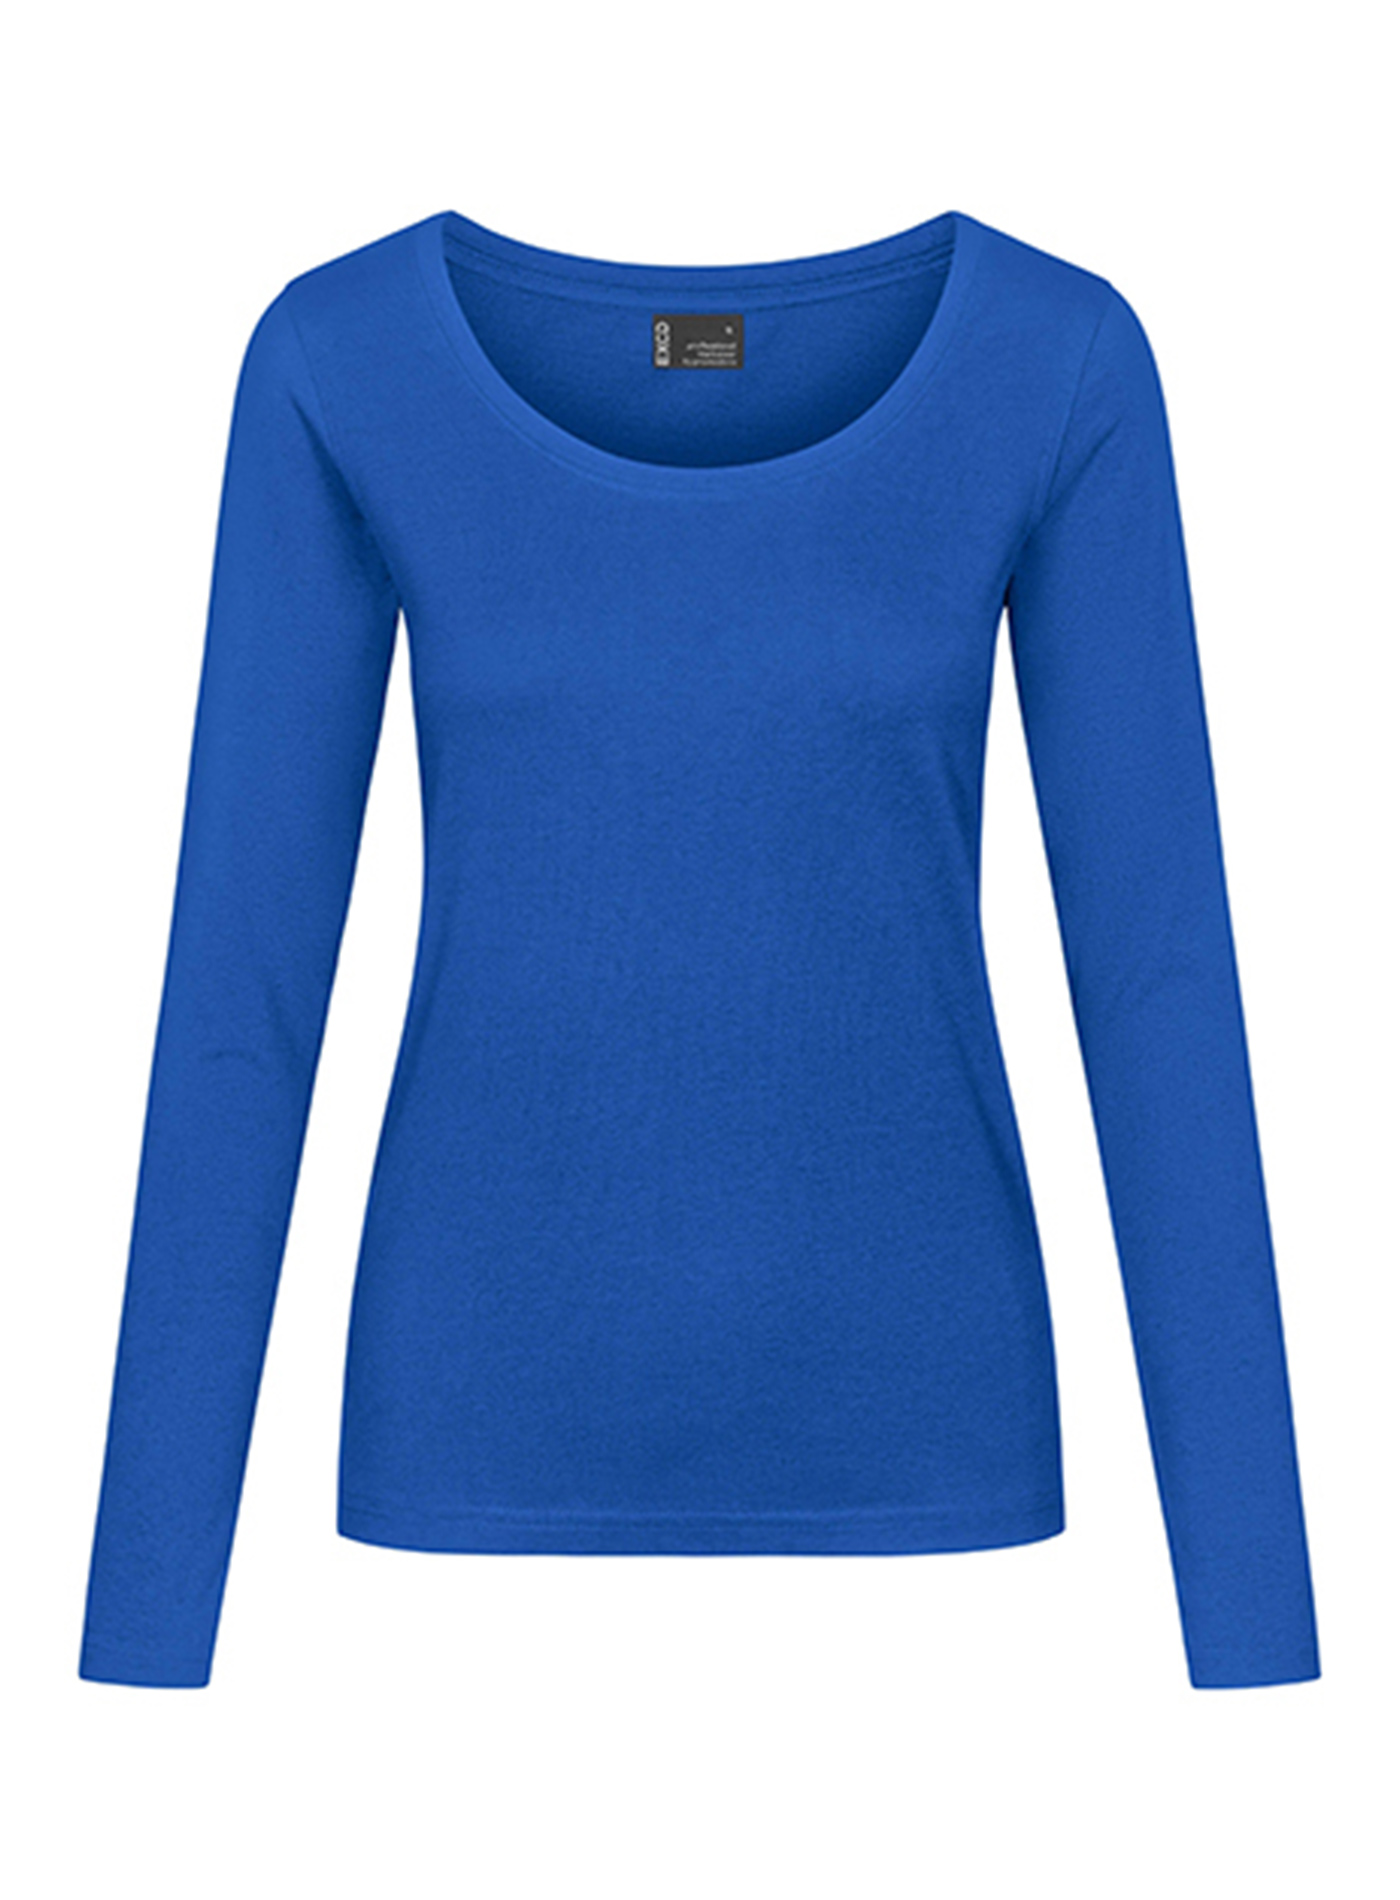 Dámské tričko s dlouhým rukávem Promodoro - Kobaltová modř S